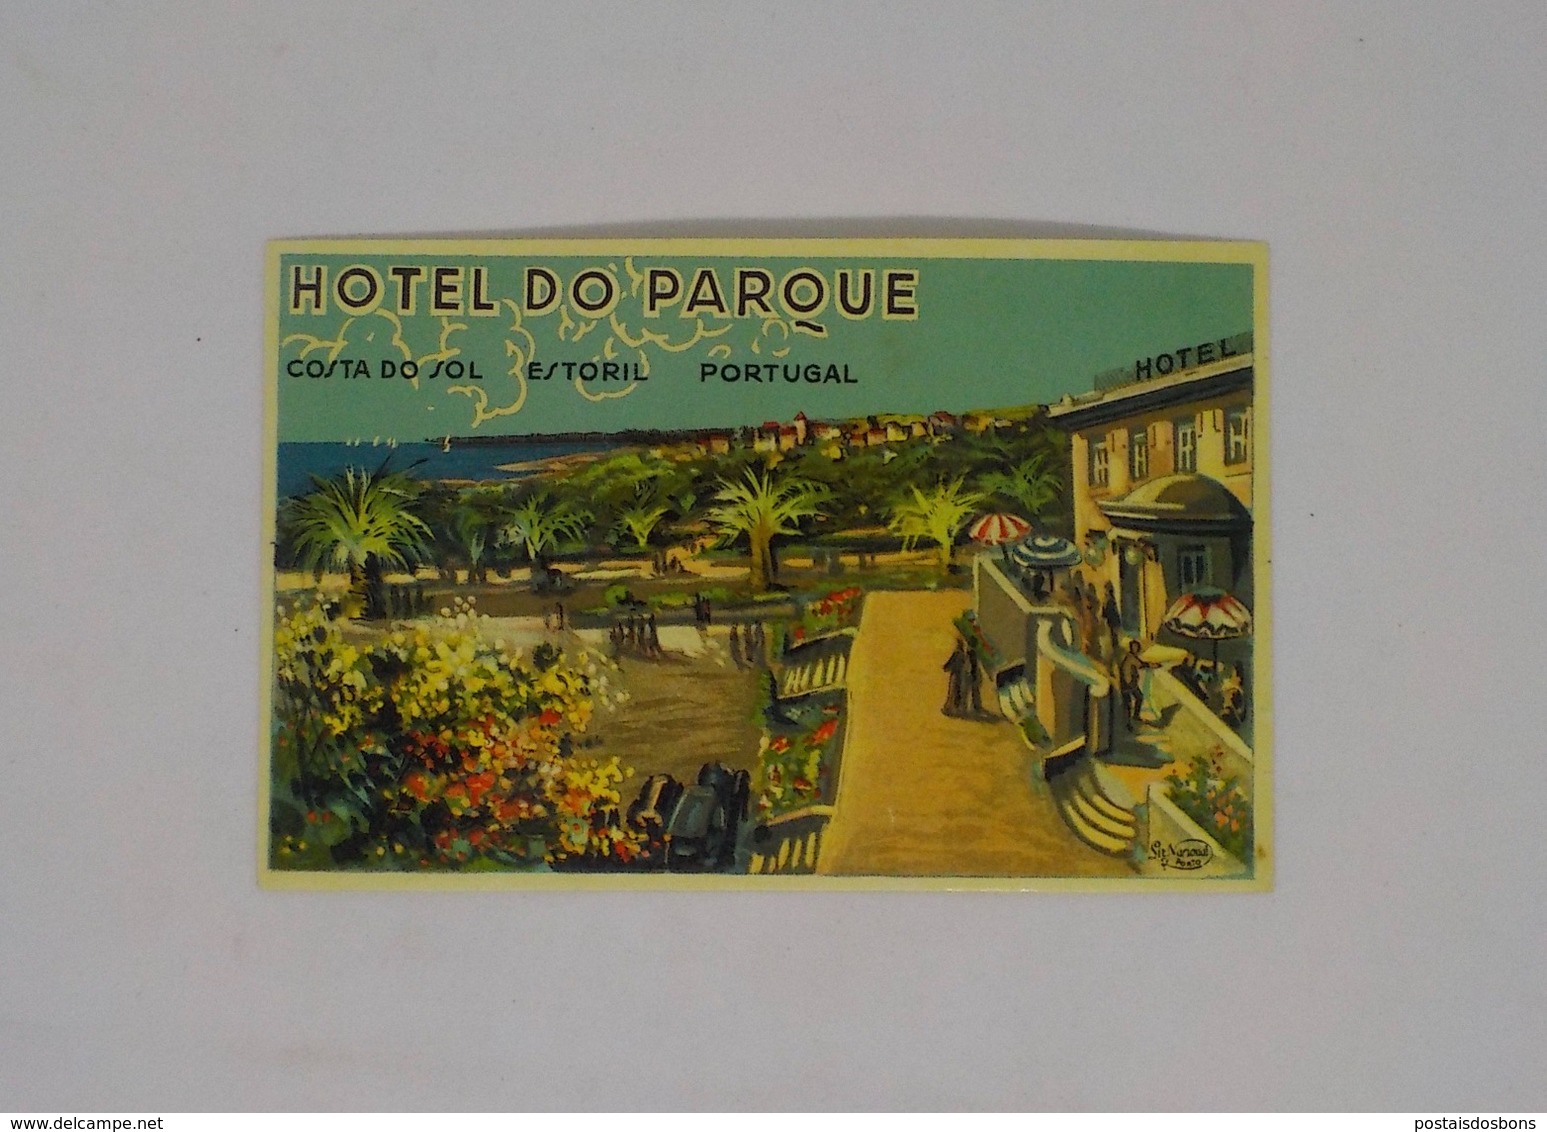 Cx13 CC29) Portugal HOTEL DO PARQUE COSTA DO SOL Estoril  Etiquette Hotel Label 8x12cm - Adesivi Di Alberghi